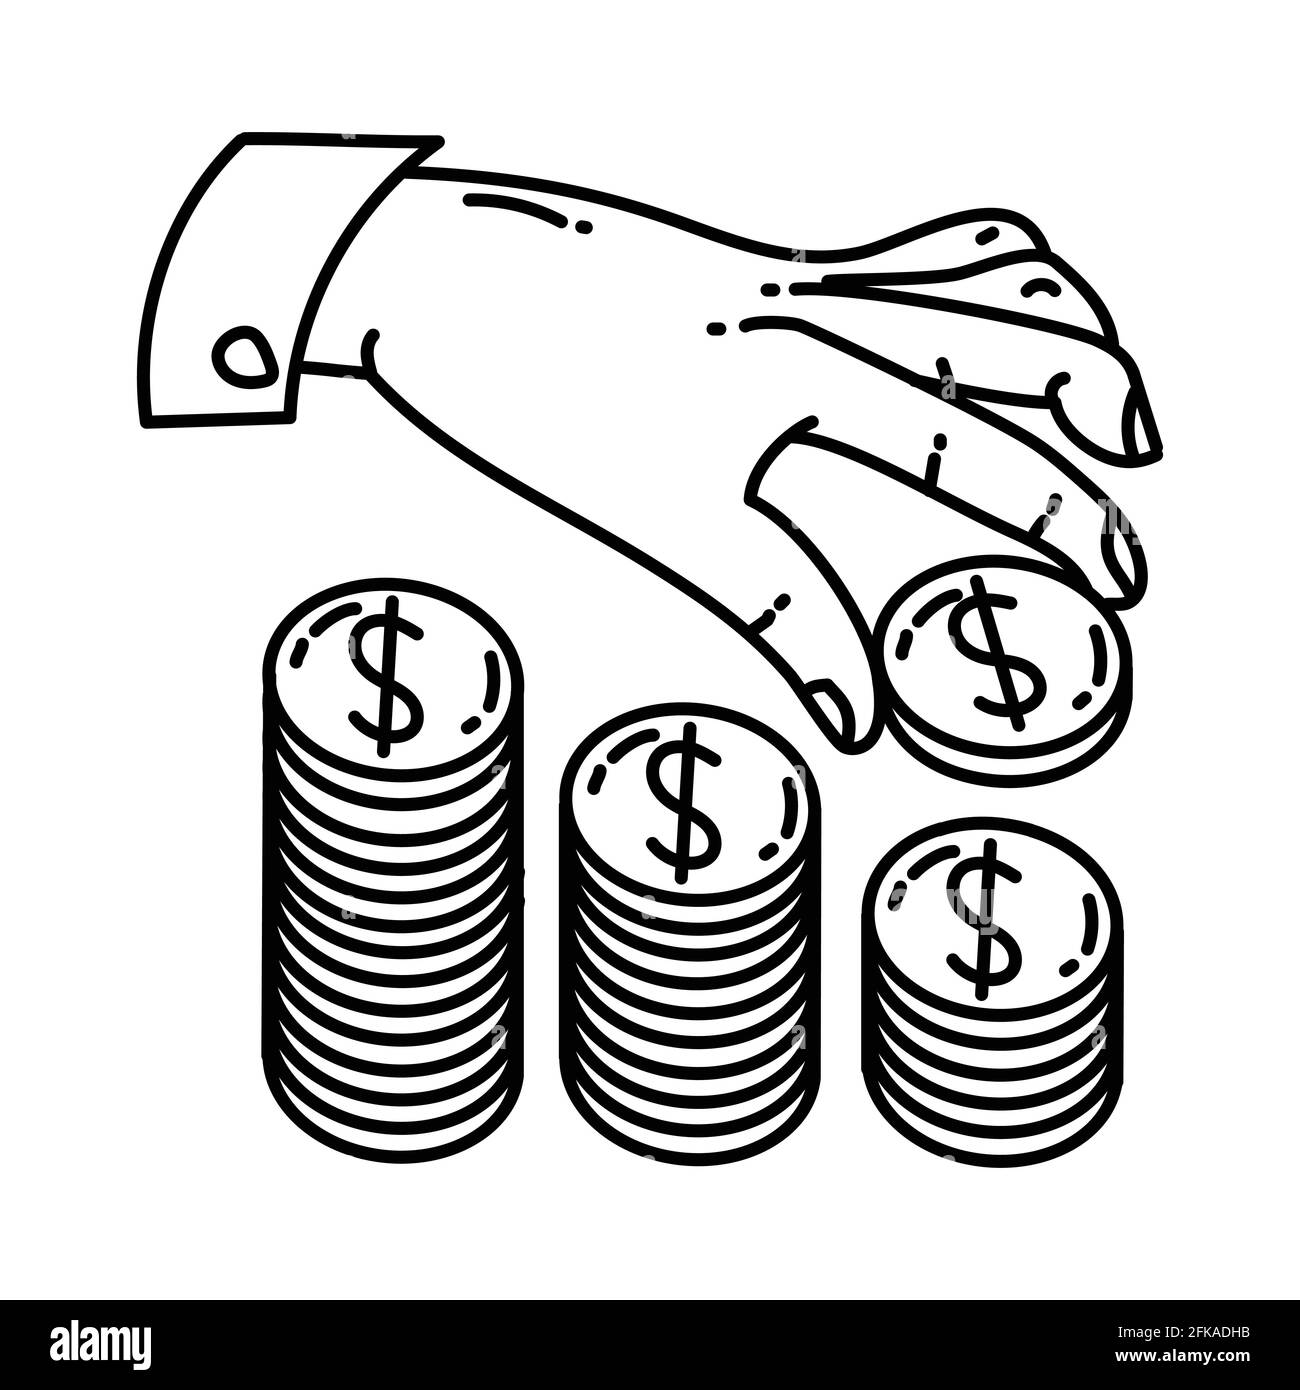 Finanzielle Aktivität in Investmentfonds Hand gezeichneter Symbolsatz Vektor. Stock Vektor